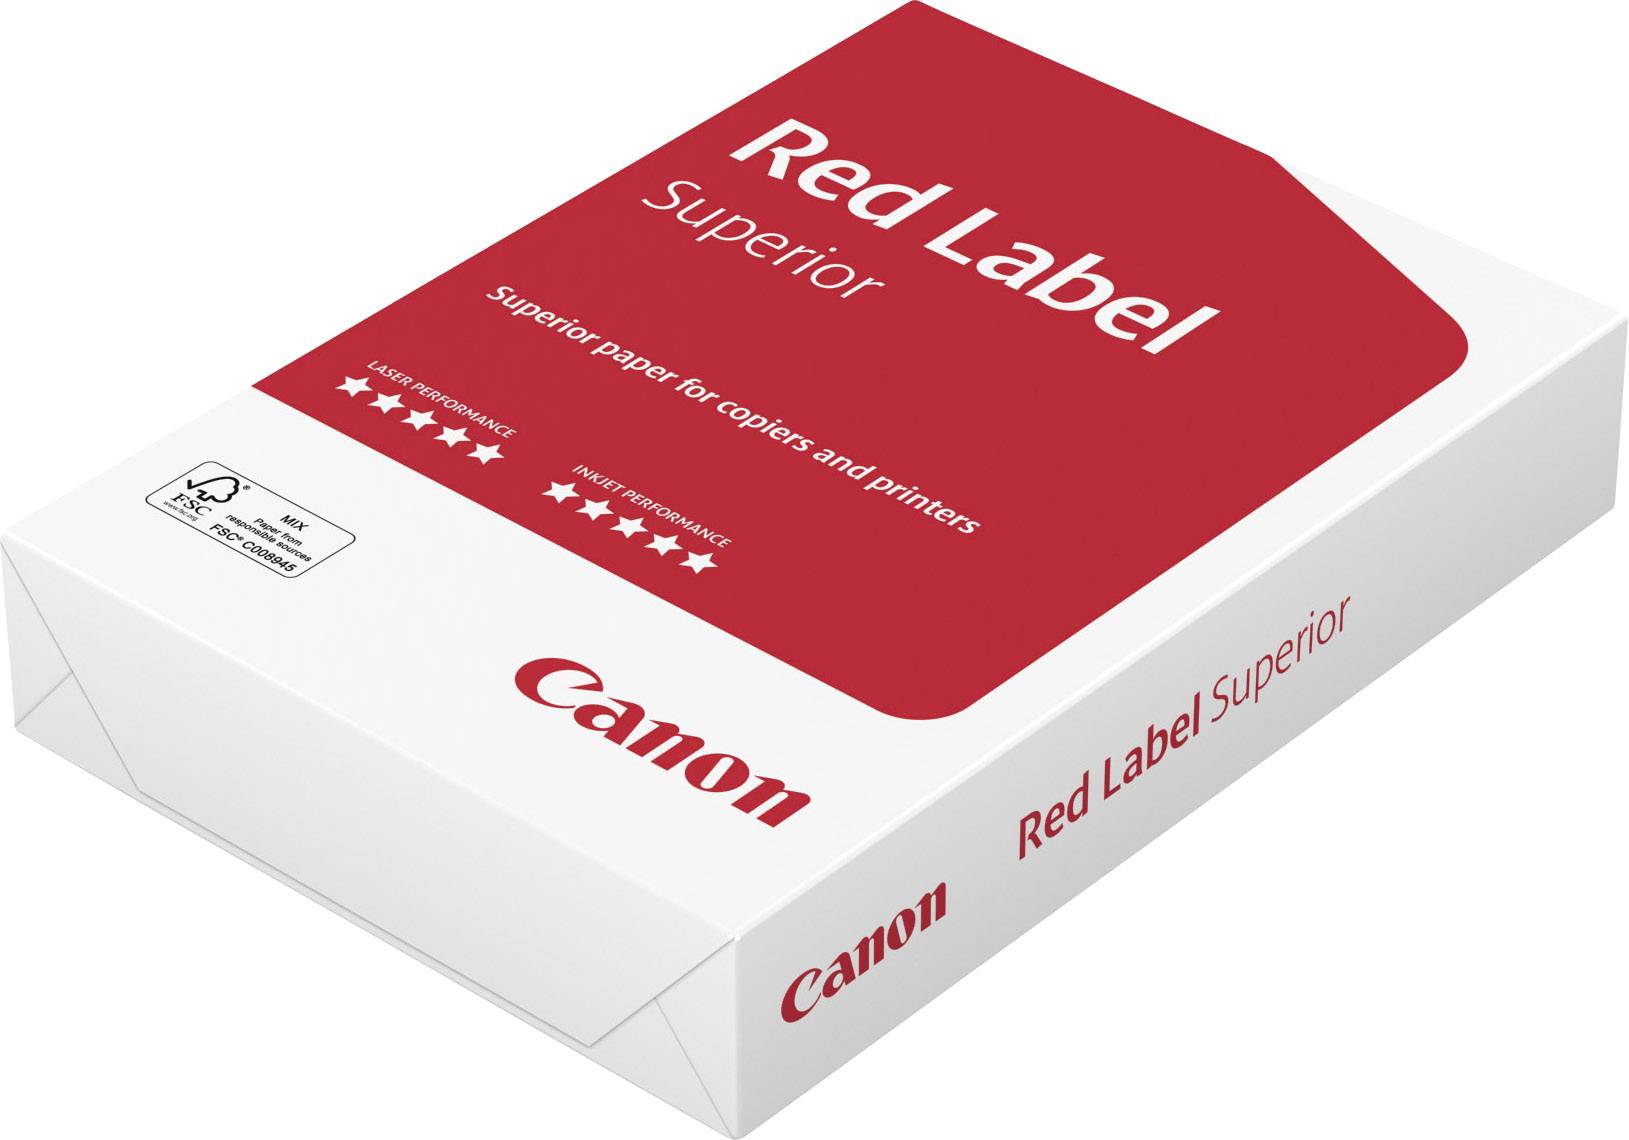 CANON Océ Red Label Paper FSC WOP111 - bond-